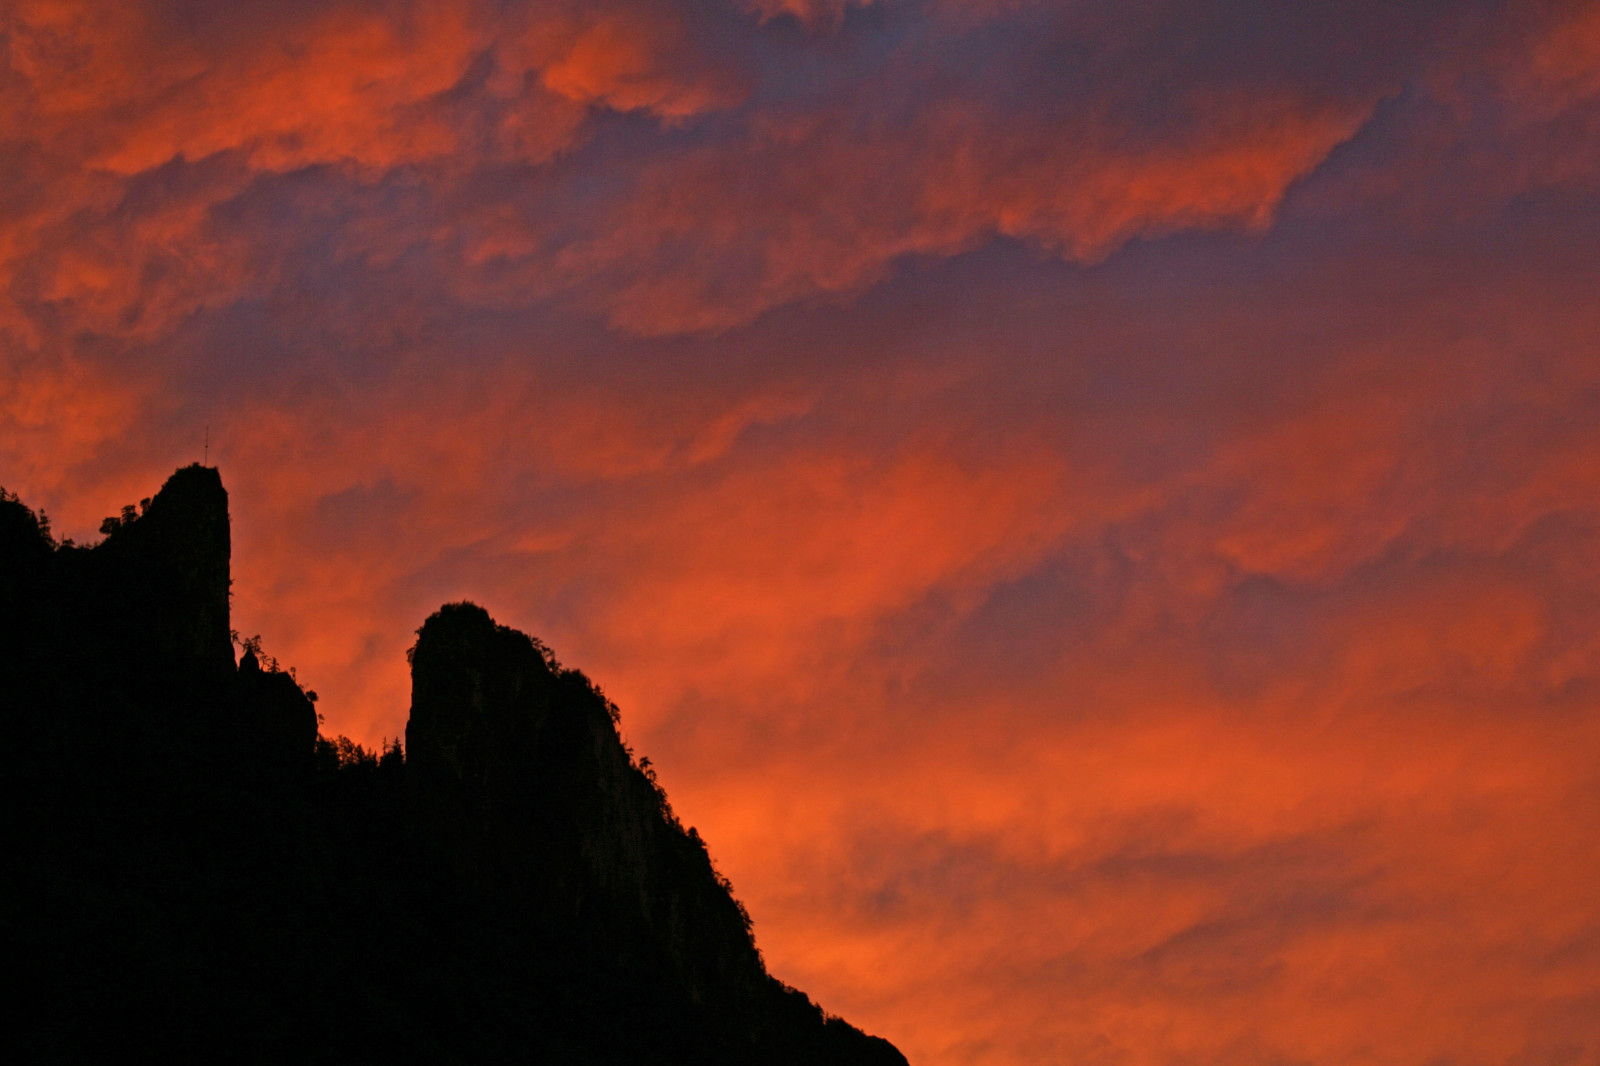 Sonnenuntergang mit dem großen Barmstein im Vordergrund. © Heiko Mandl